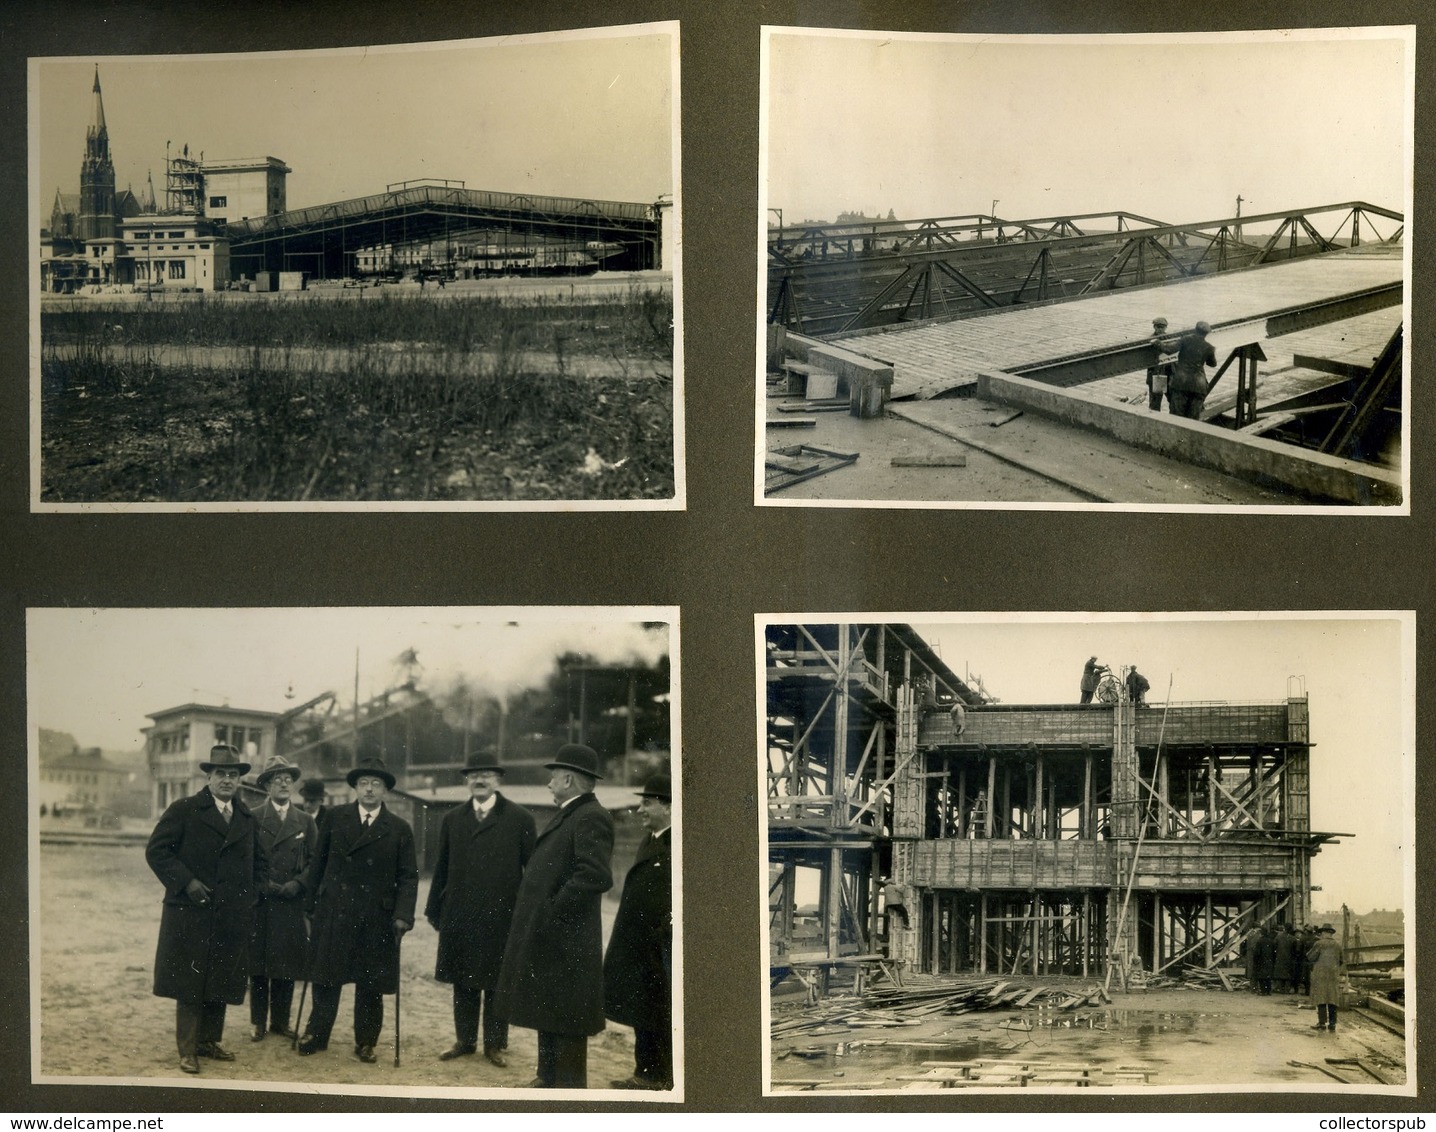 BUDAPEST 1928-30. A Székesfővárosi Autóbusz Üzem Építkezése,( Zugló ma : Récsei Center) igen ritka fotóalbum 151db (!) f